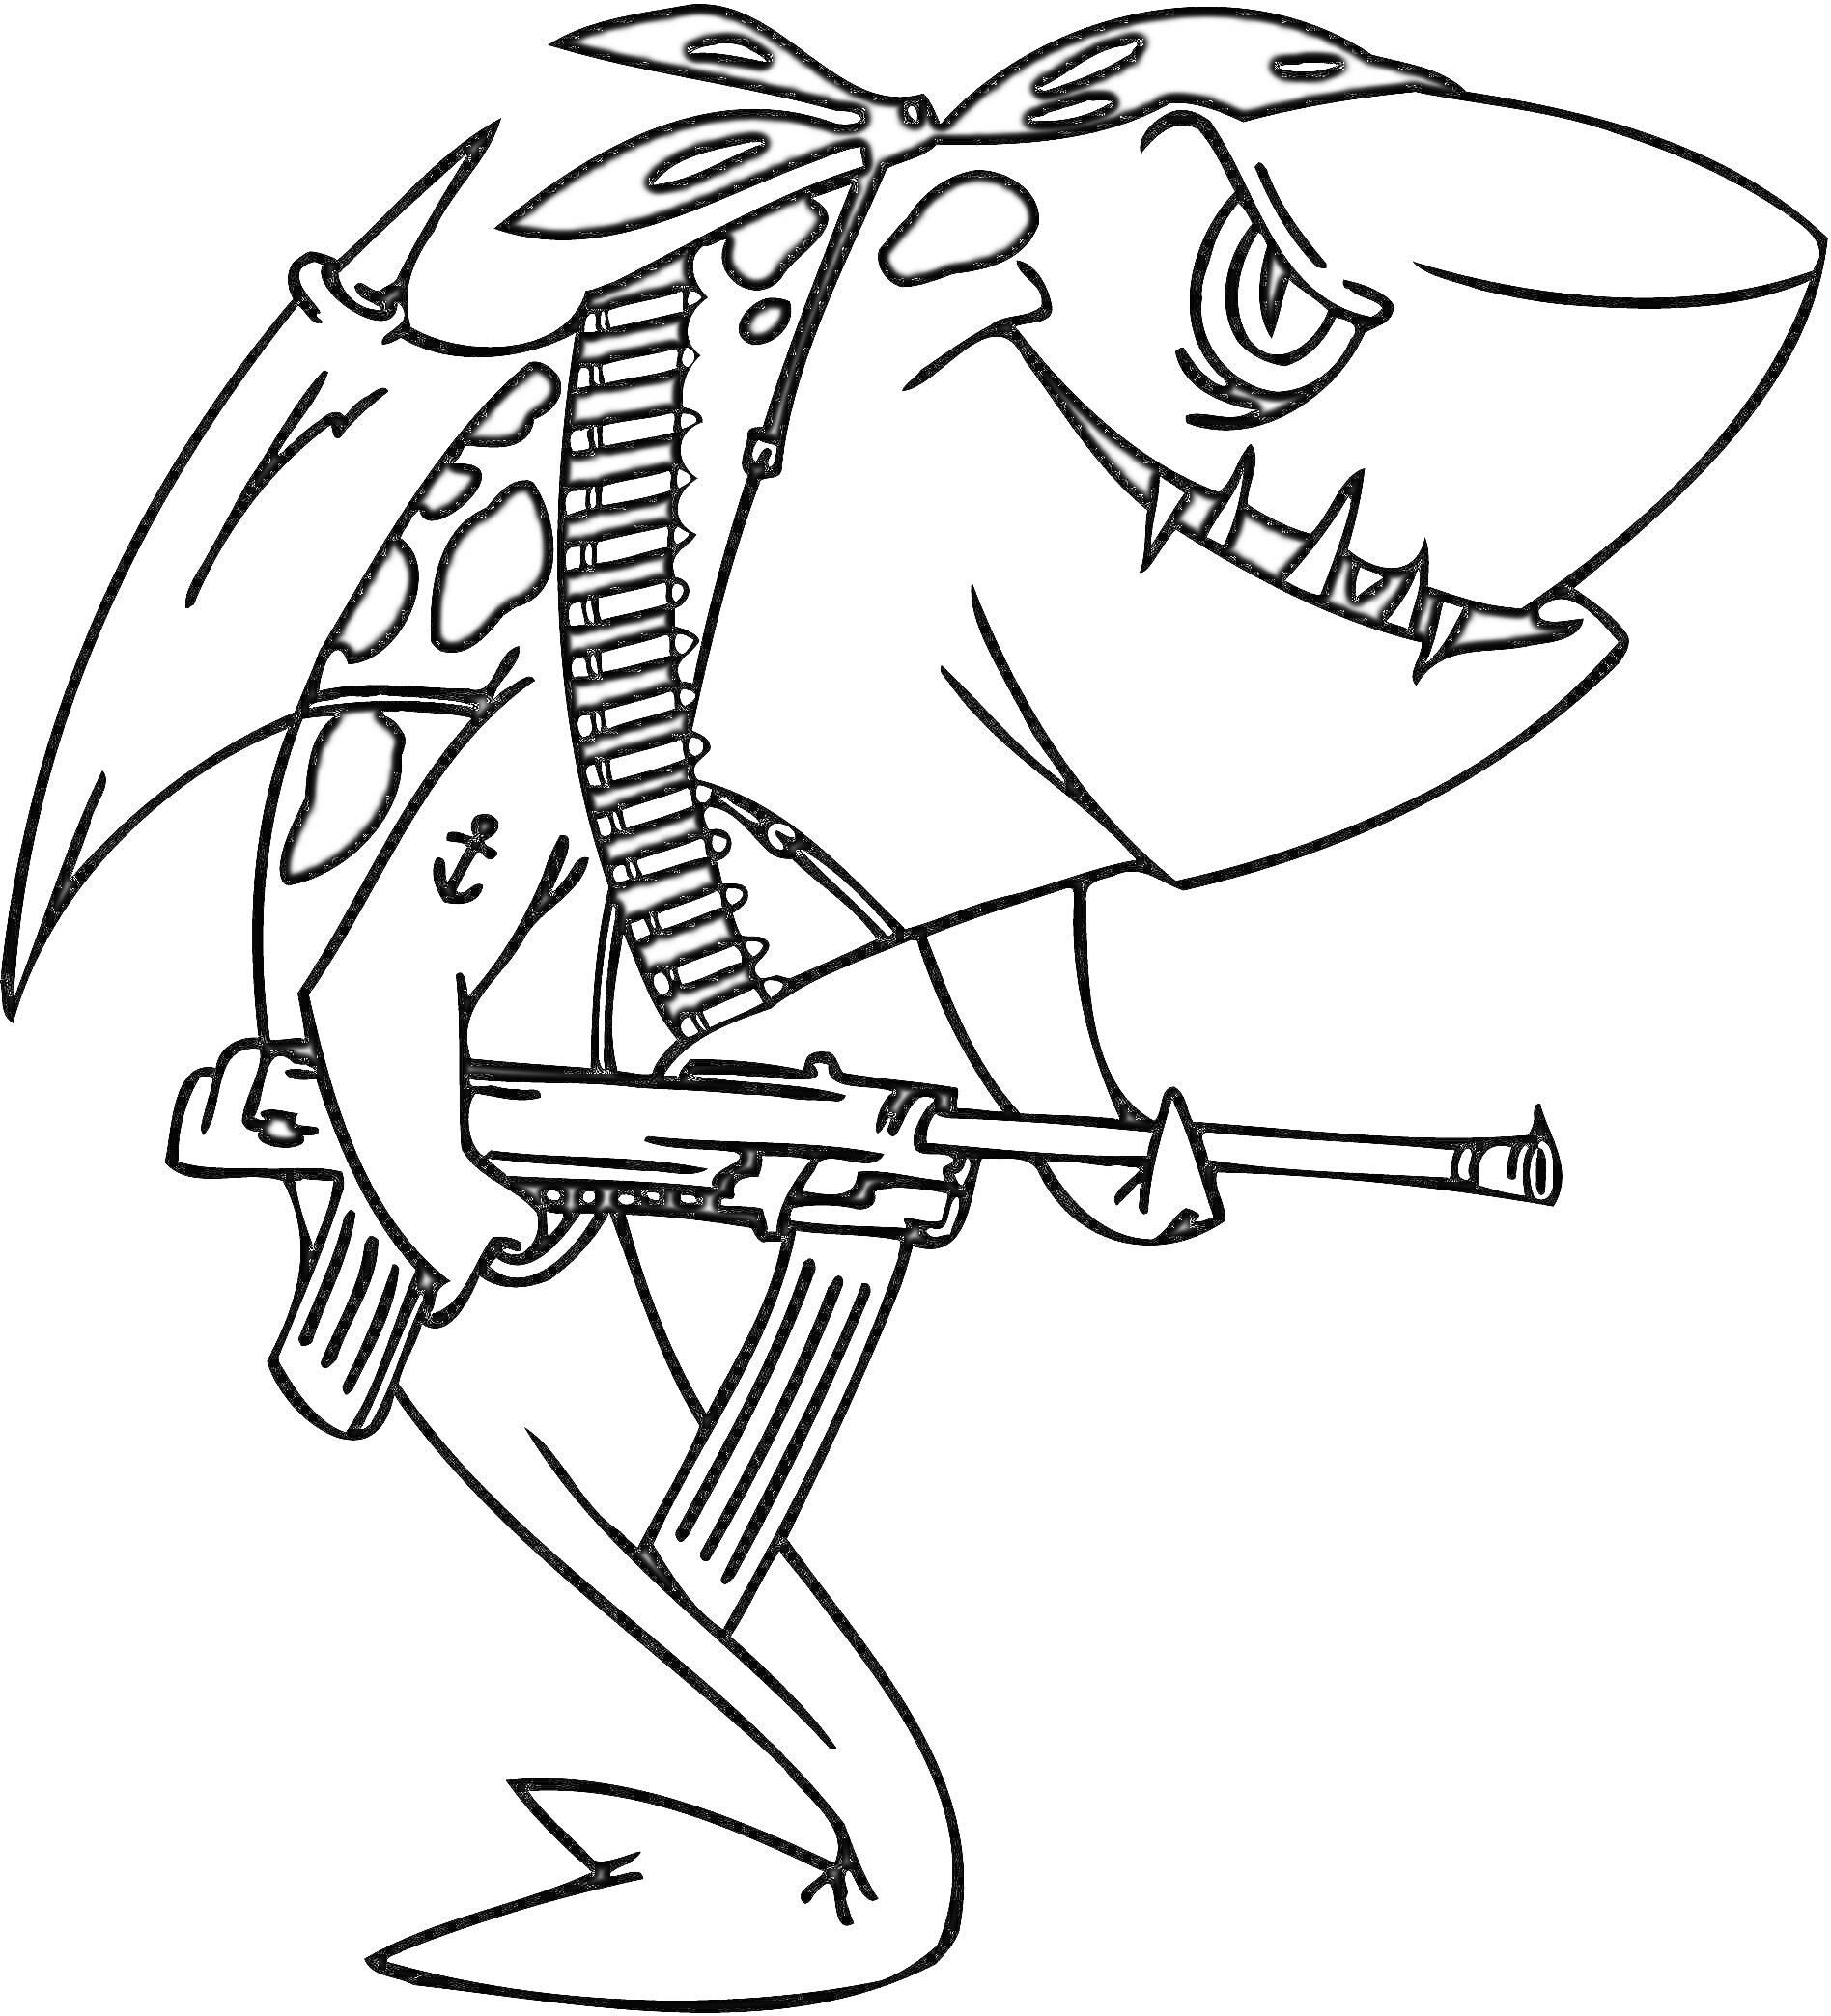 Акула-солдат с автоматом и патронташом, с повязкой на голове и татуировкой якоря на руке